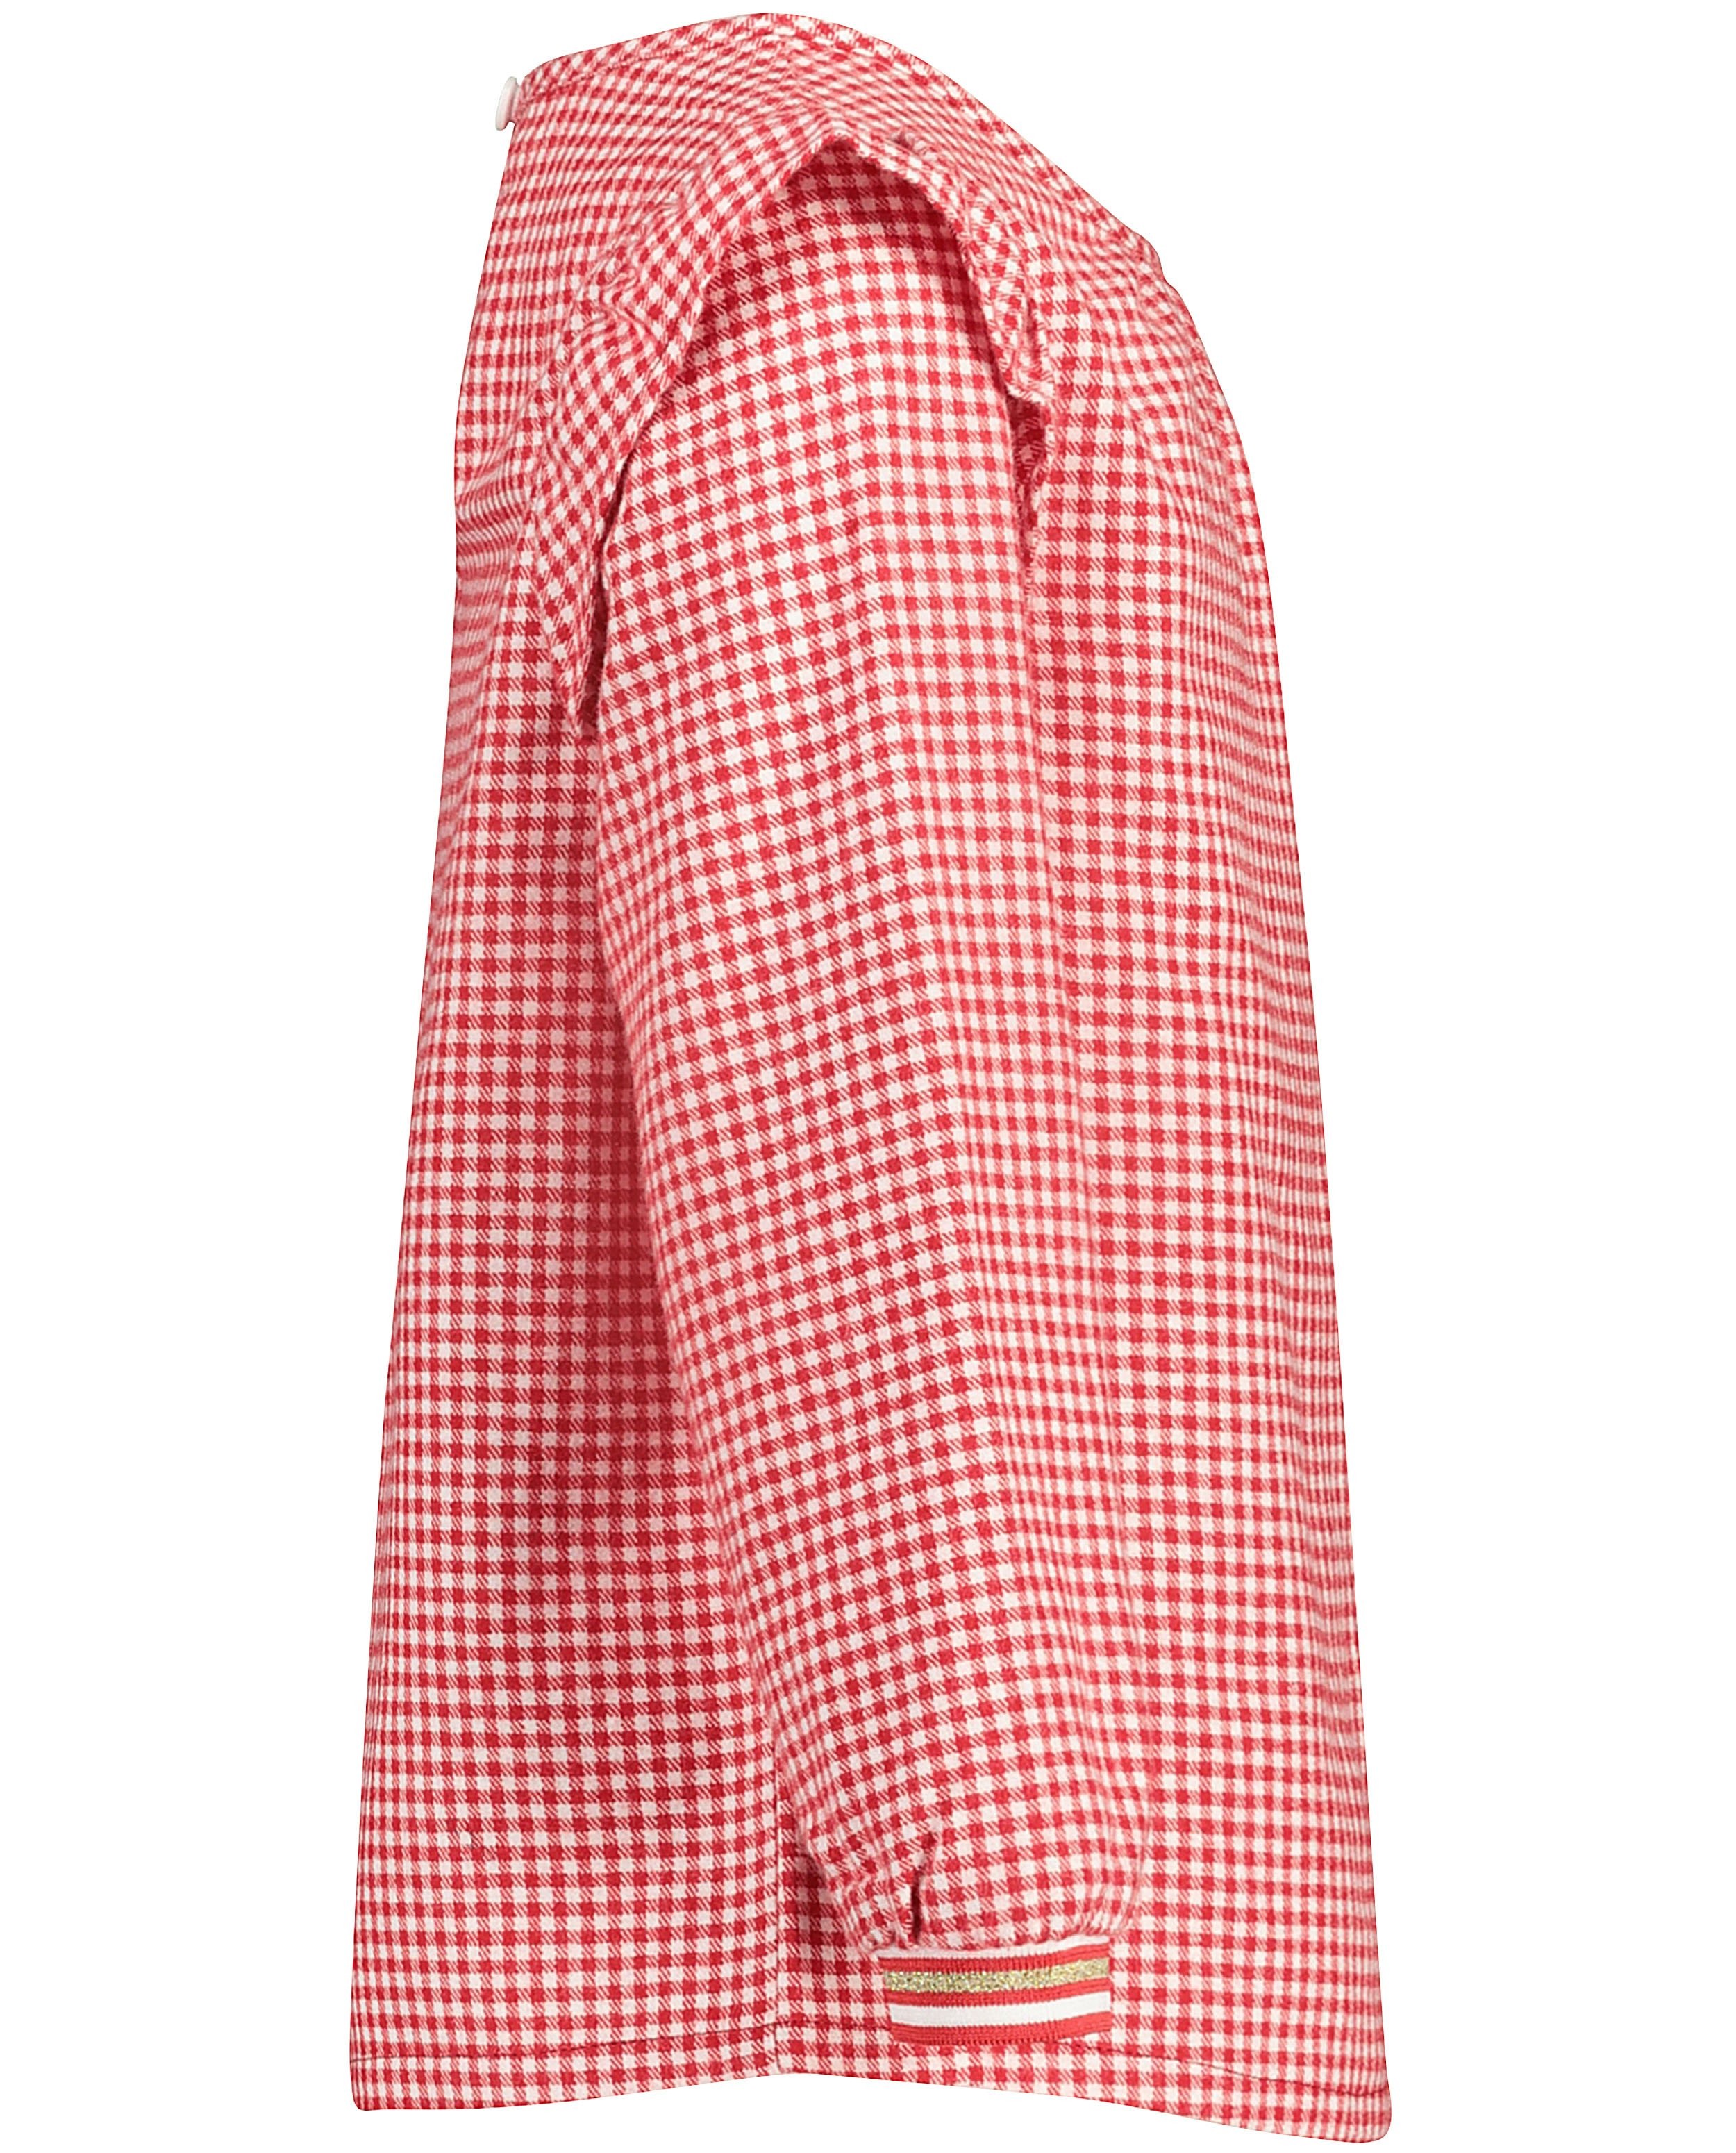 Hemden - Rood-witte blouse met ruitjes Plop